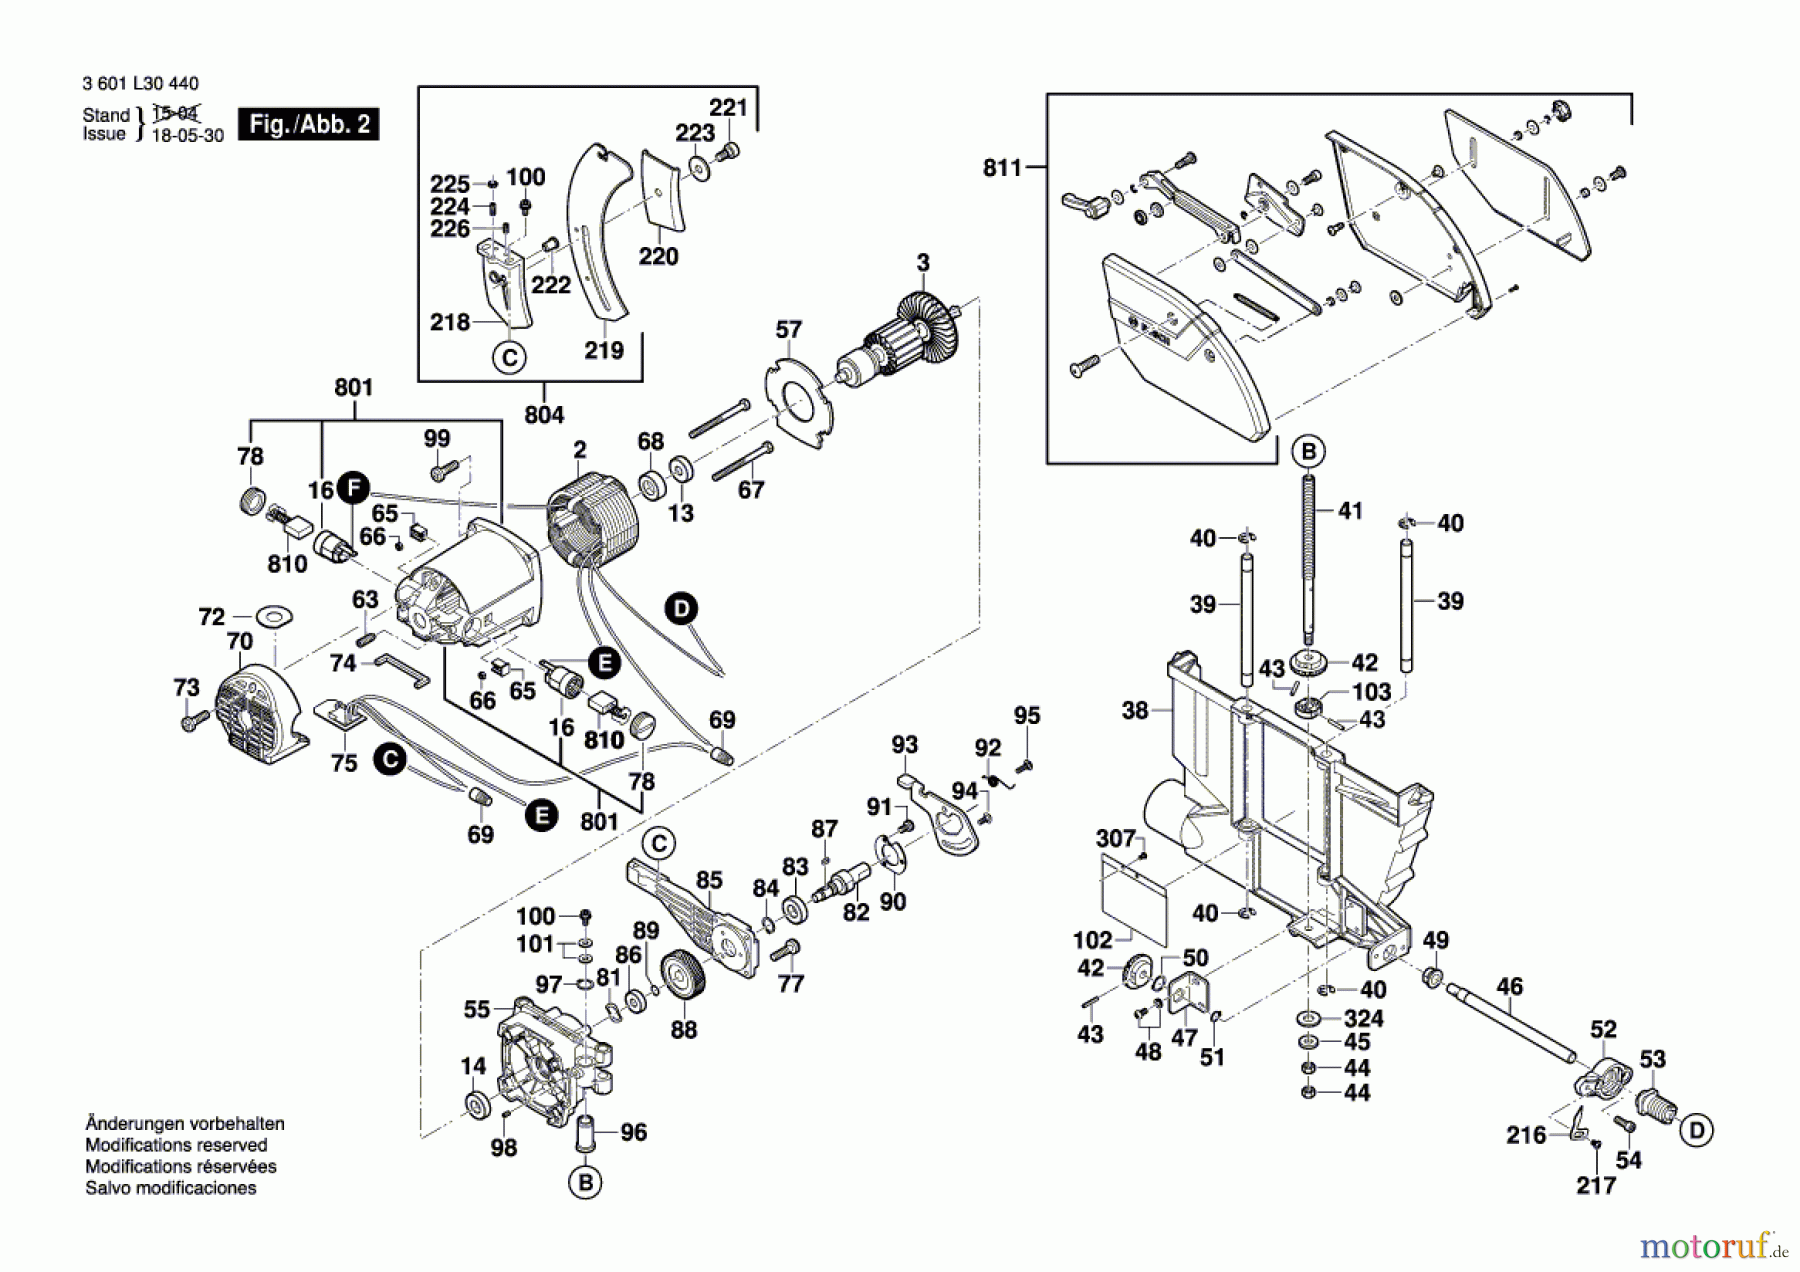  Bosch Werkzeug Tischkreissäge GTS 10 XC Seite 2